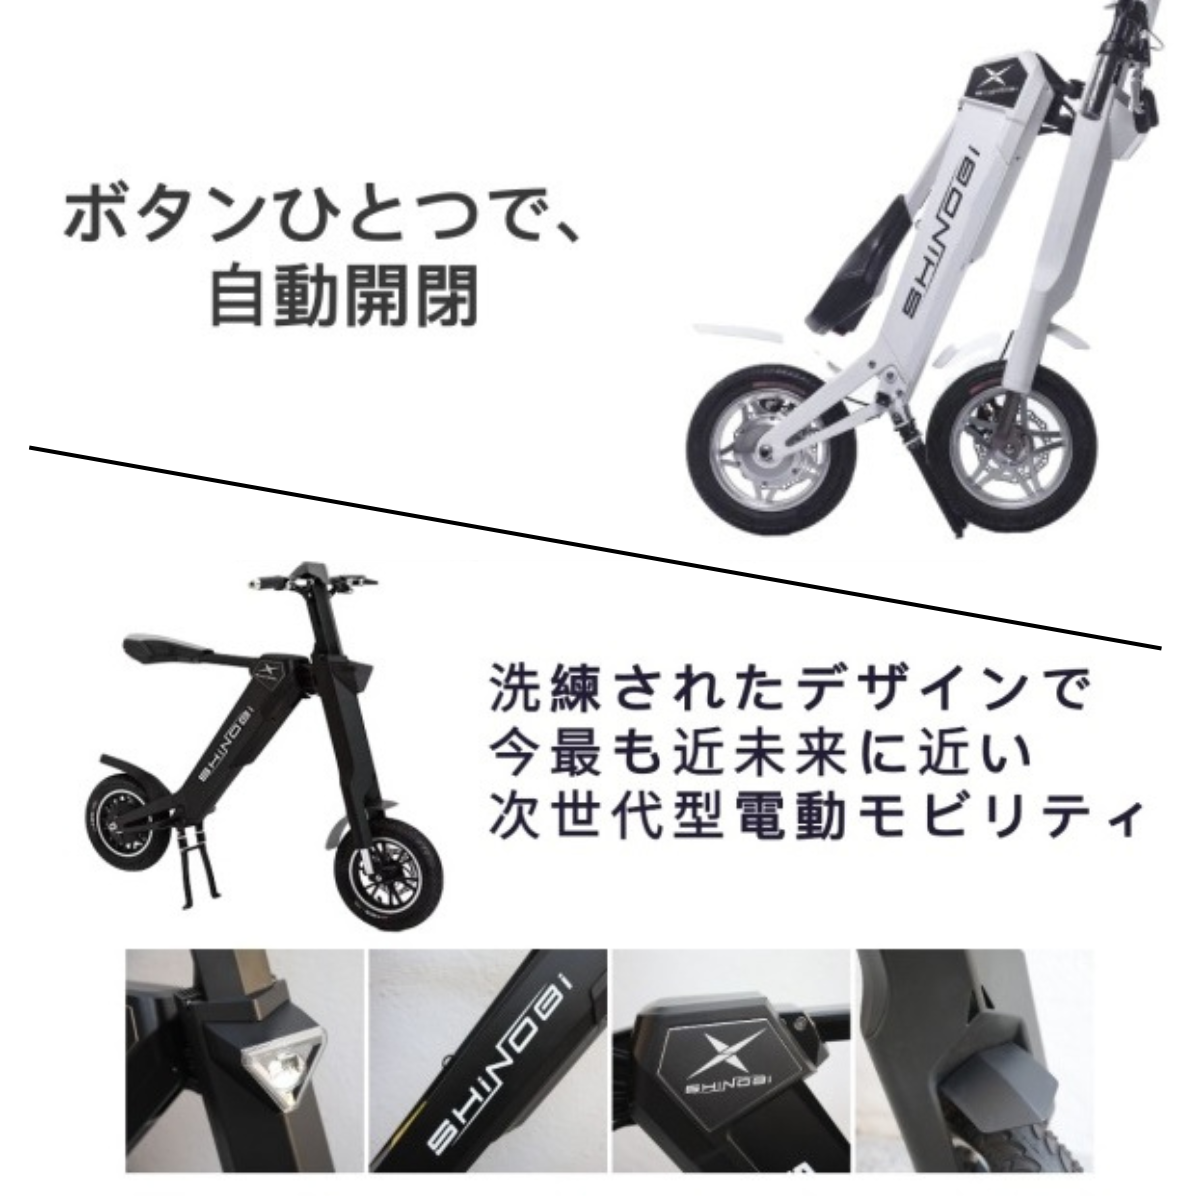 公式出品】電動バイク SHiNOBi シノビ フレームバッグ特典あり - バイク